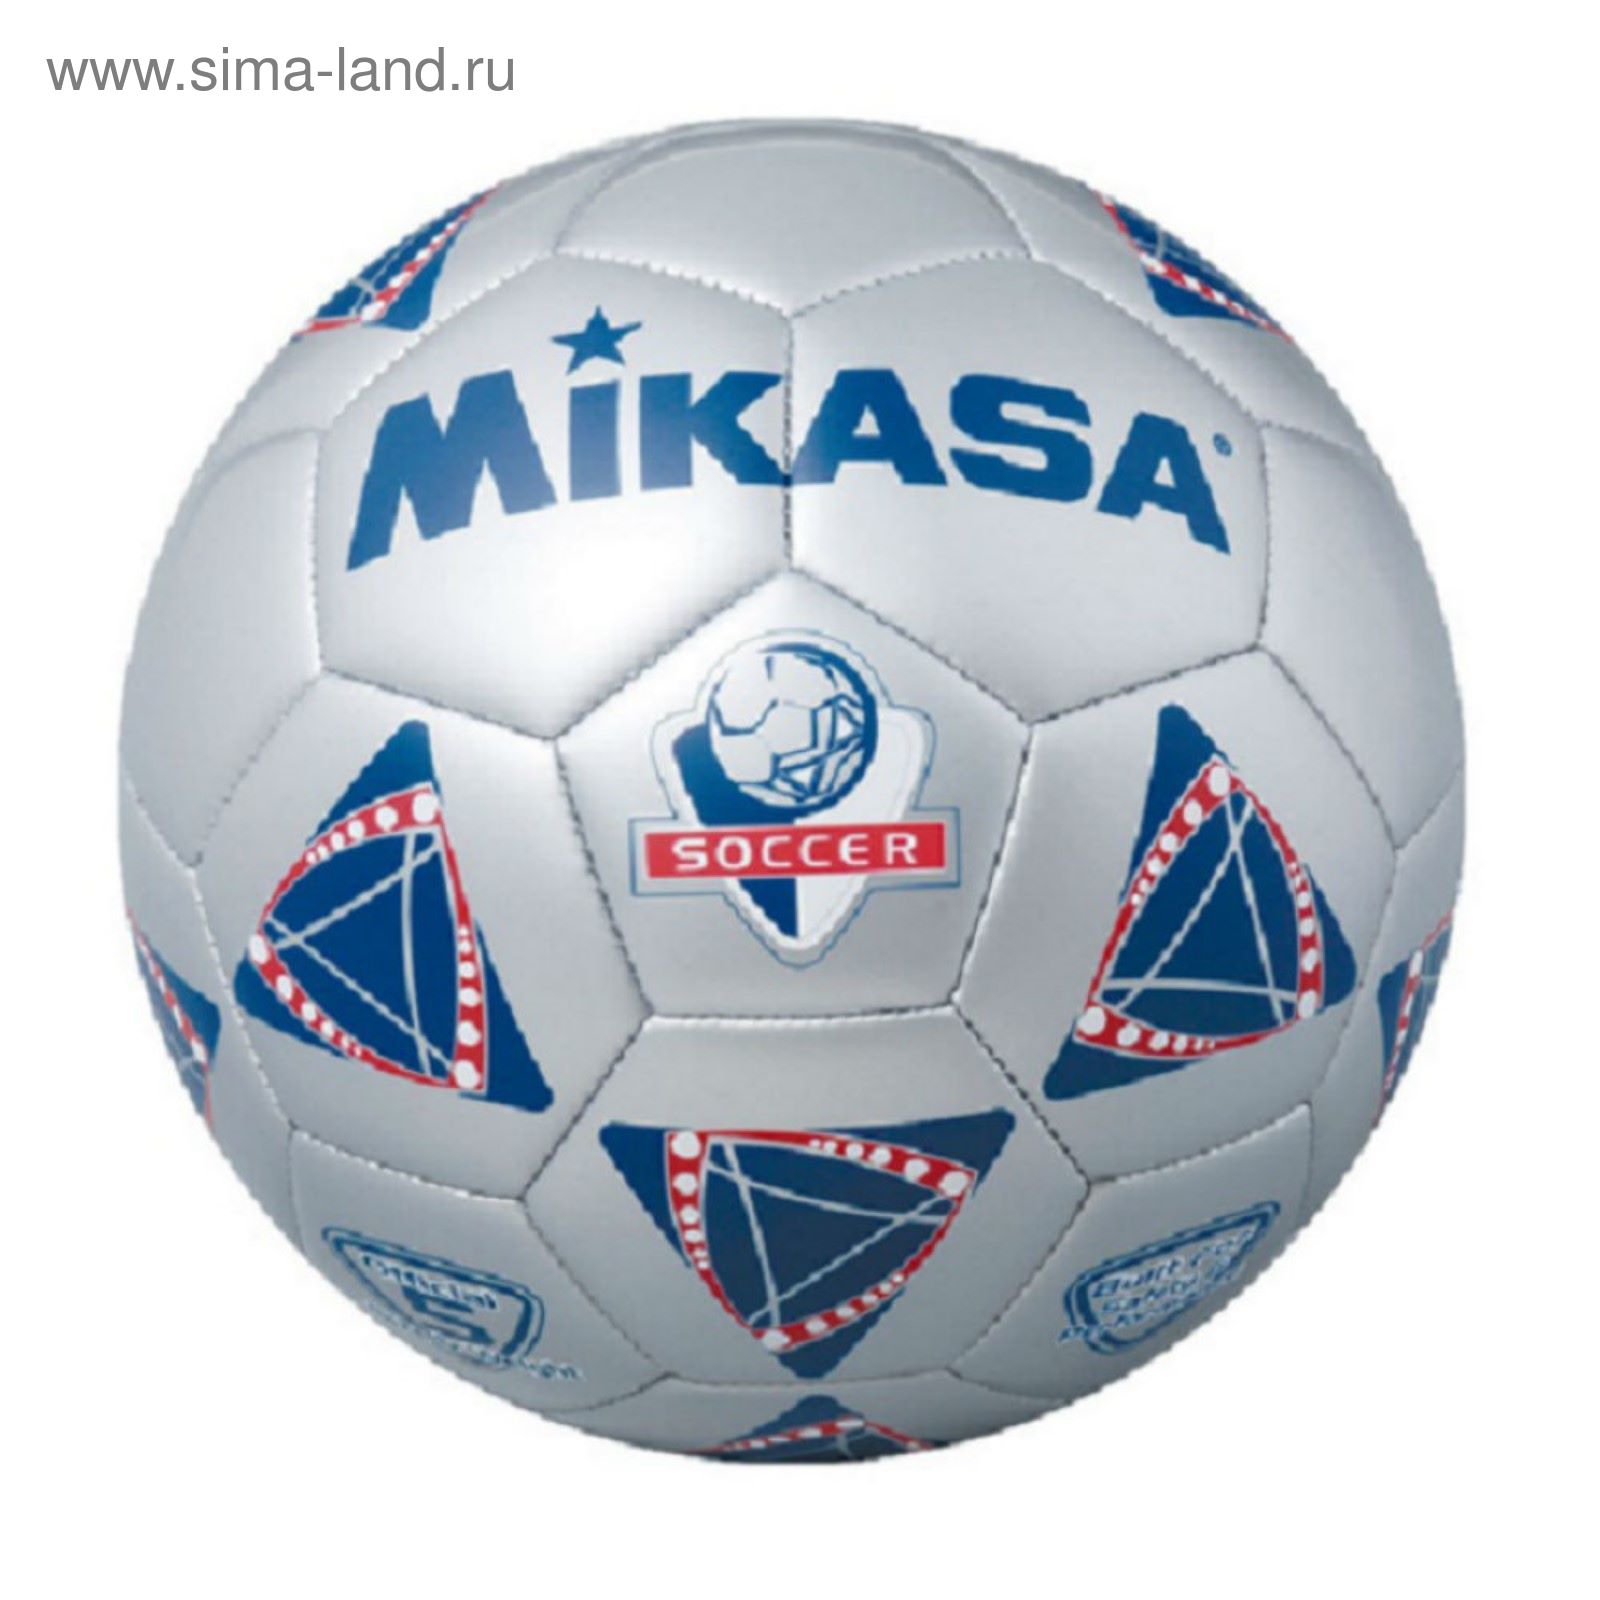 Мяч футбольный сувенирный Mikasa SX1.5